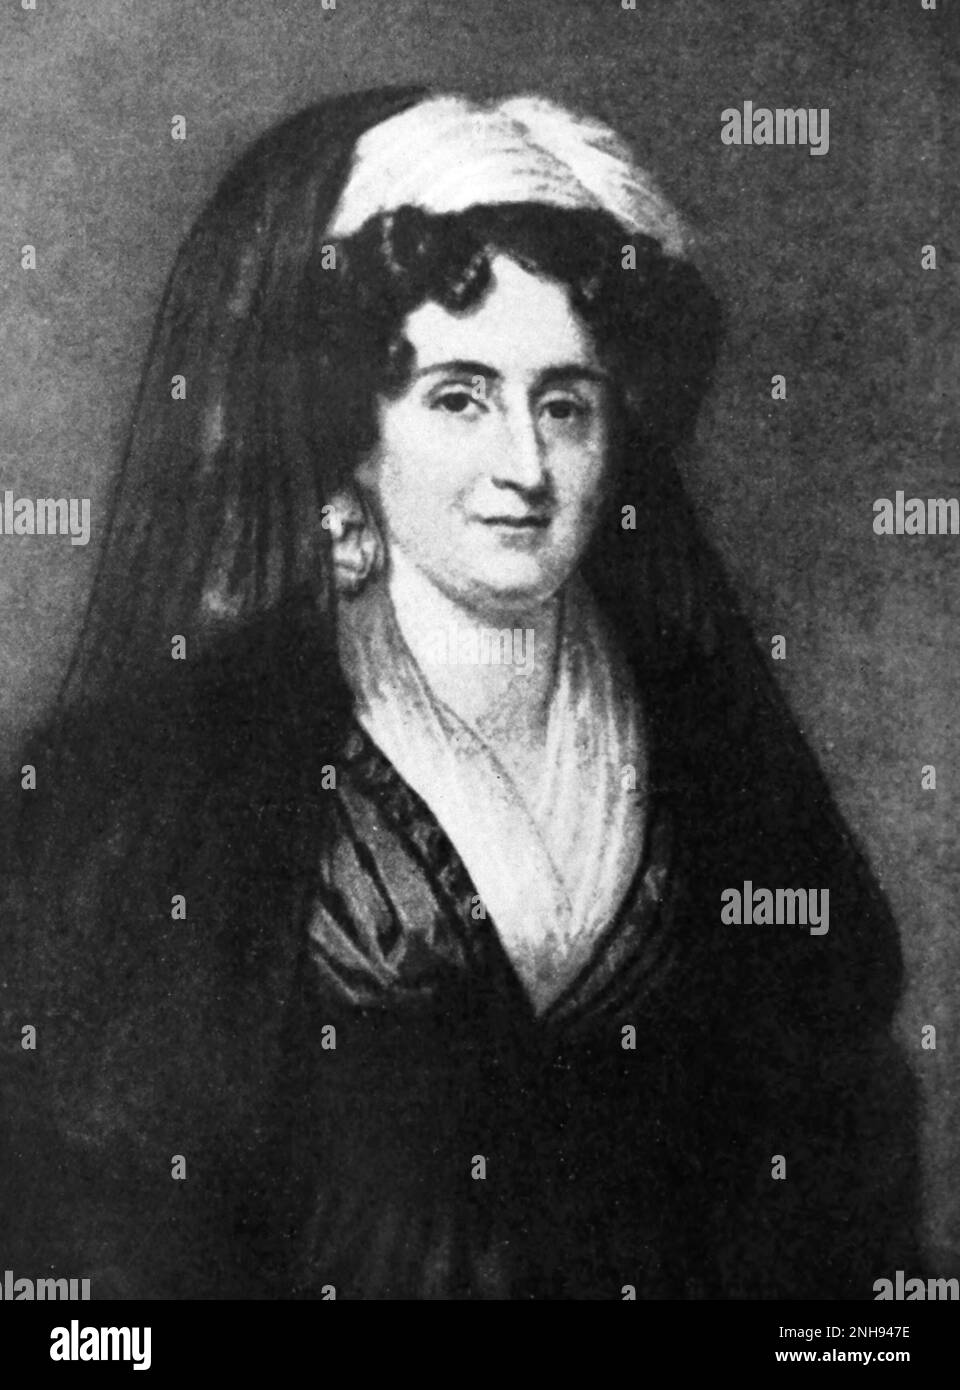 Emma Hart Willard (Troy, 1787-1870) è stata una attivista dell'educazione femminile americana che ha fondato la prima scuola per l'istruzione superiore femminile, il Troy Female Seminary a Troy, New York. Con il successo della sua scuola, Willard è stata in grado di viaggiare in tutto il paese e all'estero, per promuovere l'istruzione per le donne./n/n Foto Stock